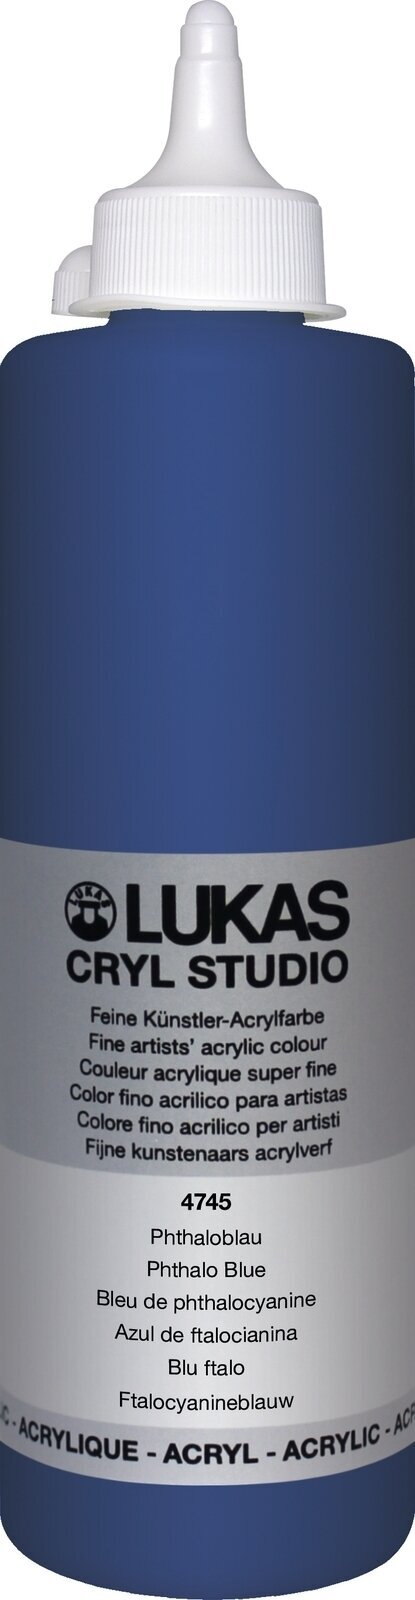 Peinture acrylique Lukas Cryl Studio Acrylic Paint Plastic Bottle Peinture acrylique Phthalo Blue 500 ml 1 pc